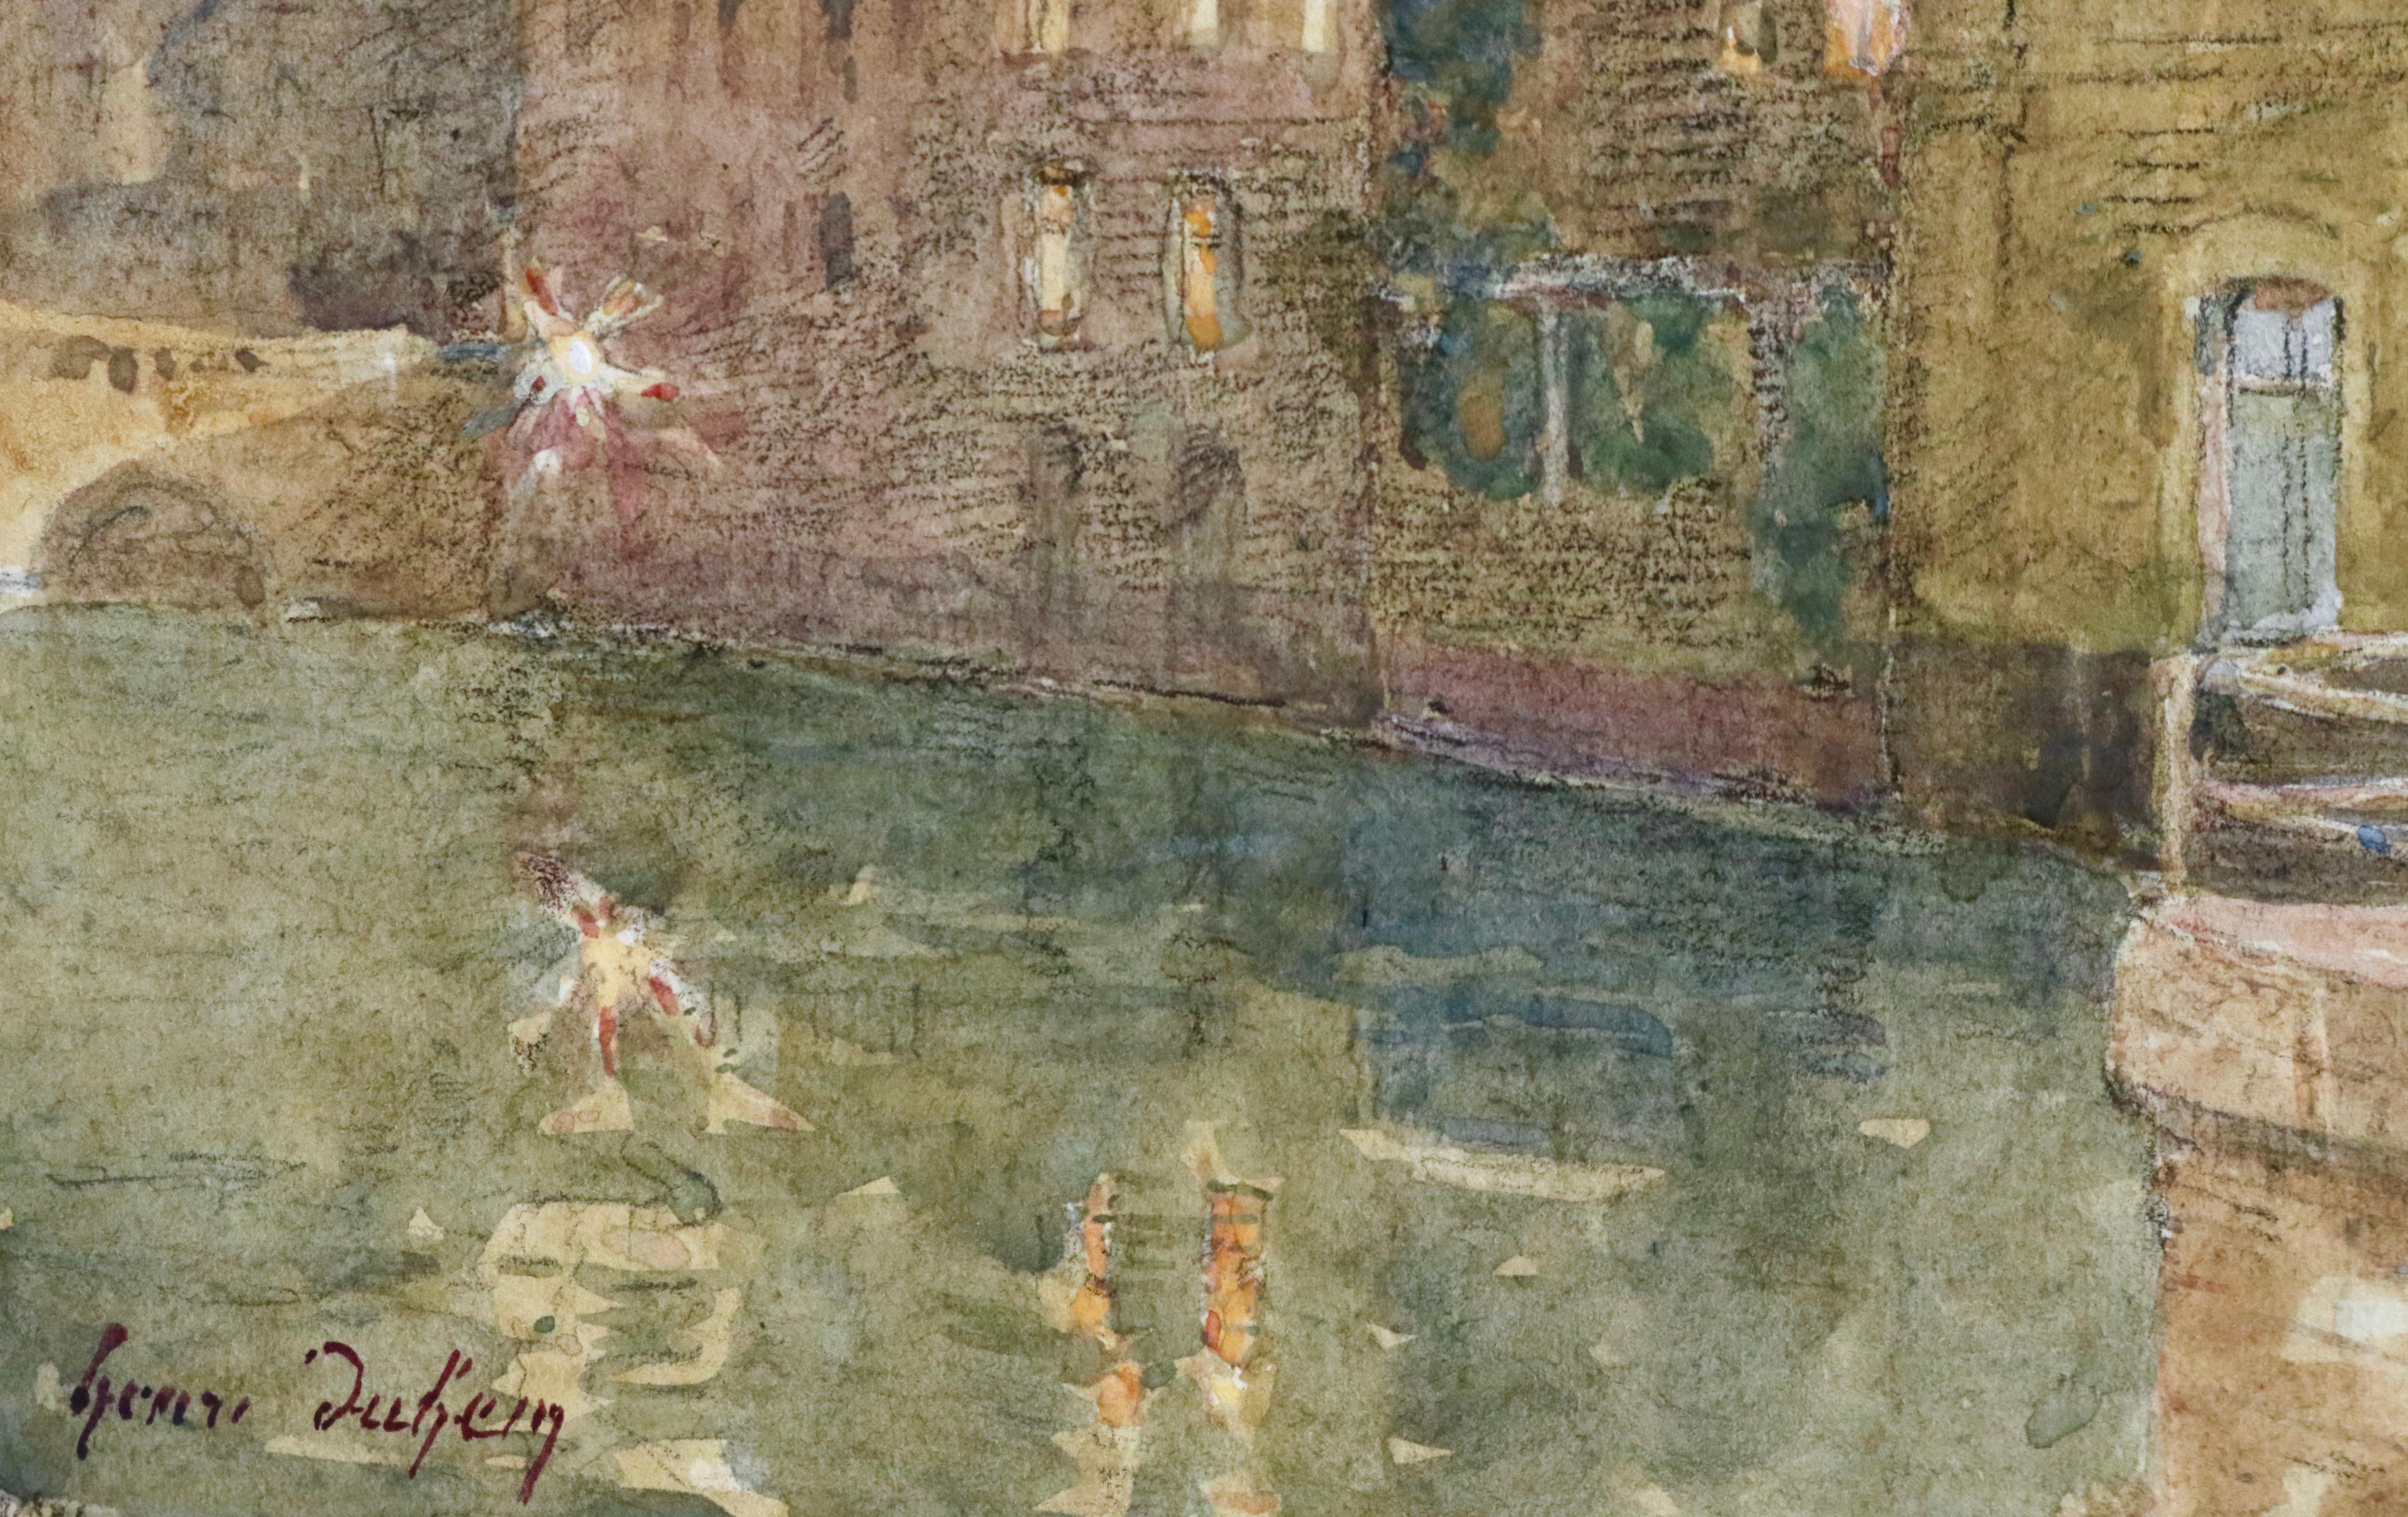 Canal - Abend - 19. Jahrhundert Aquarell, Elegante Figuren von Wasser von H Duhem (Impressionismus), Art, von Henri Duhem